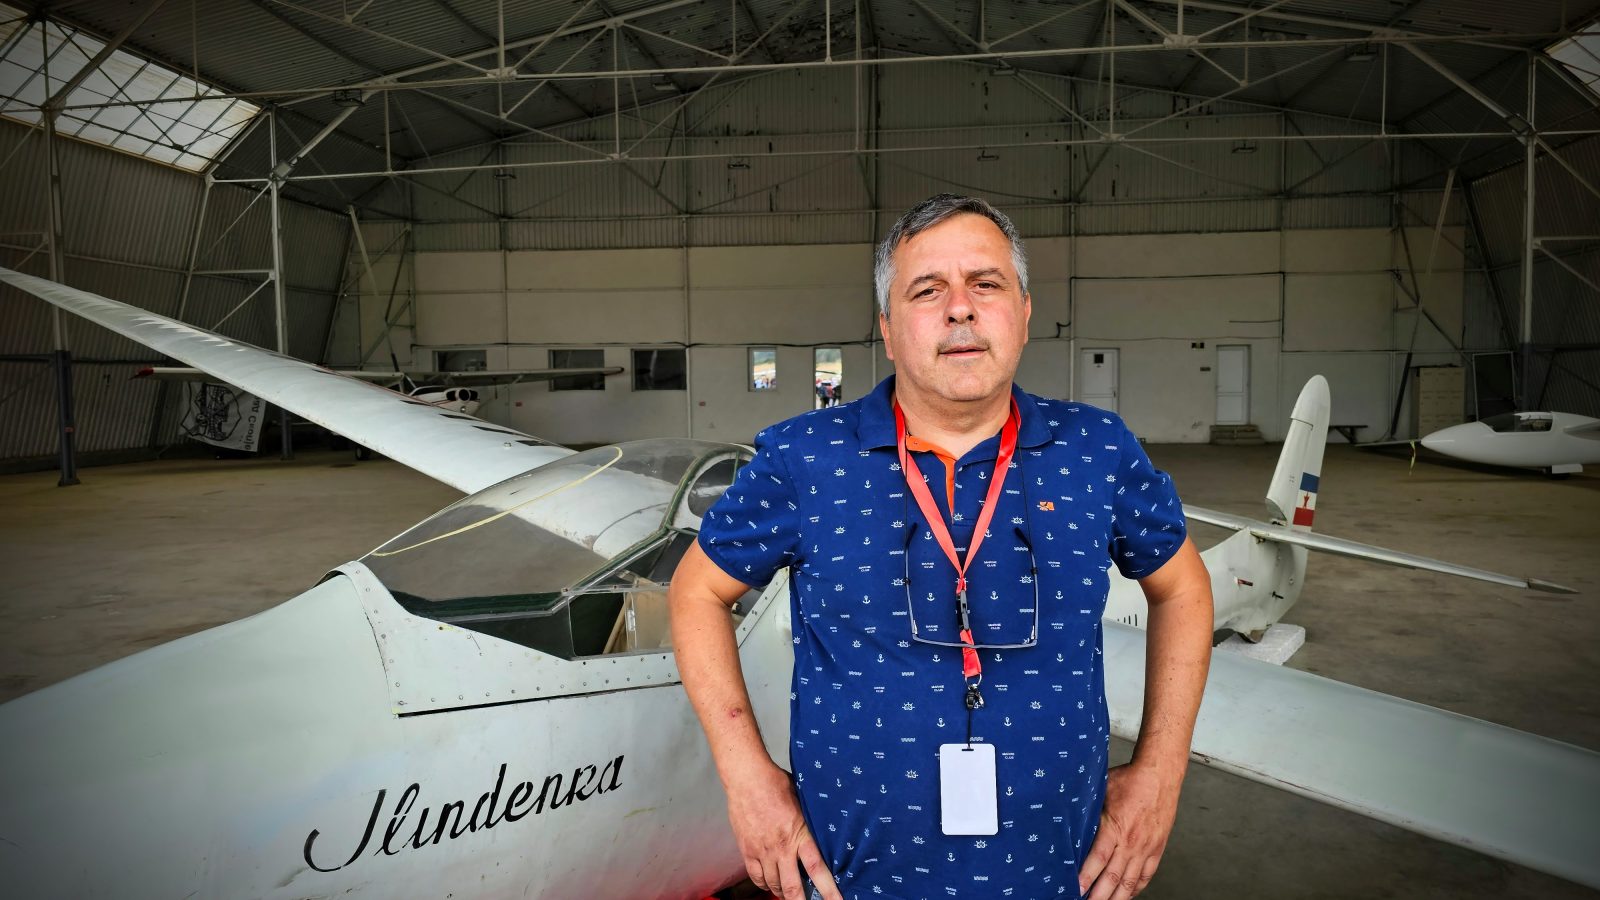 [INTERVJU] Kako je makedonska jedrilica Ilindenka spašena iz Muzeja vazduhoplovstva u Beogradu radi restauracije u Skoplju